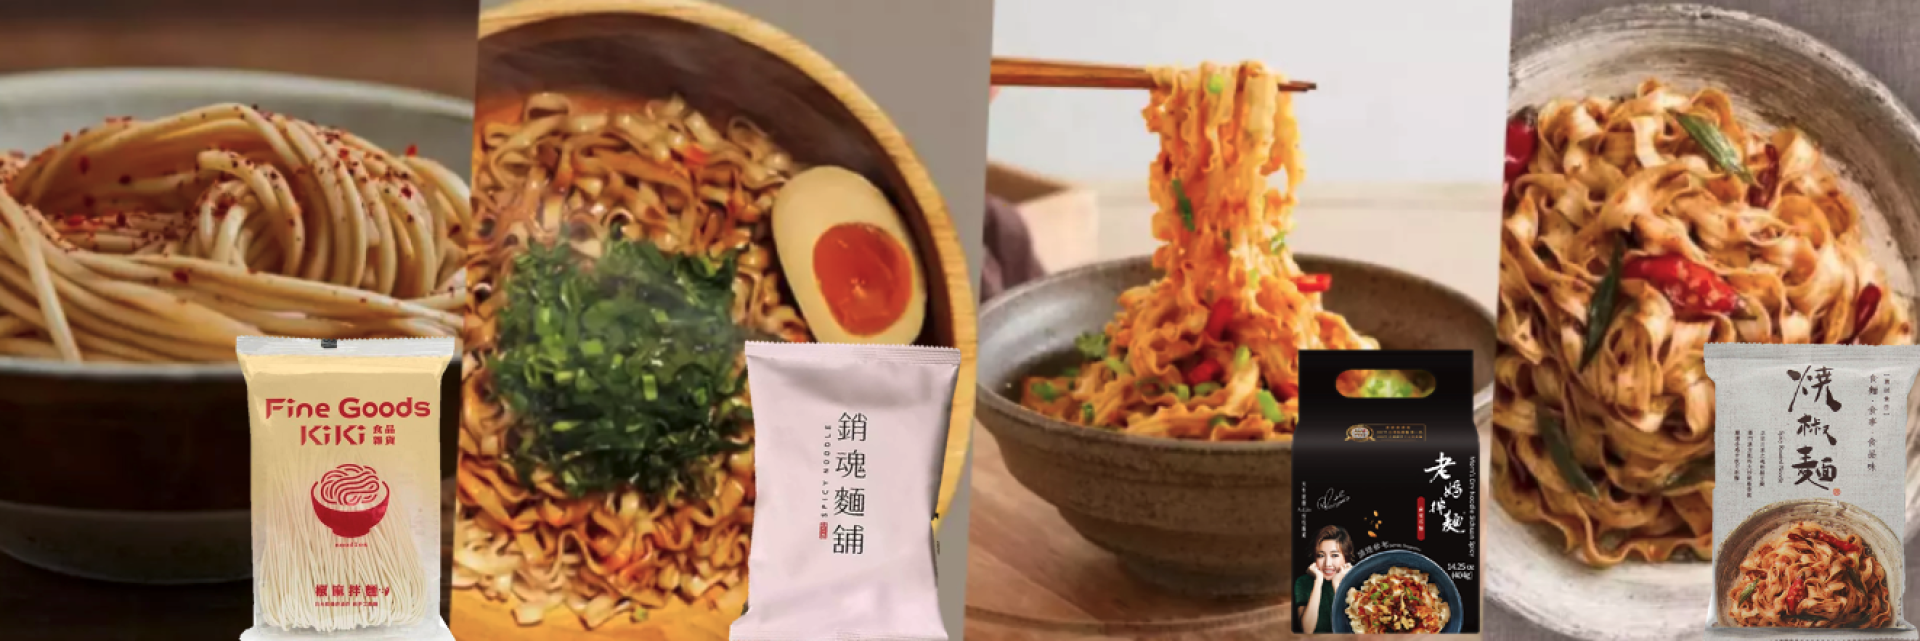  日本で台湾旅行| 台湾まぜそば 食べ比べセット(銷魂麺舖・KiKi・老媽拌麵・賈以食日) |日本国内配送 | 送料込み 